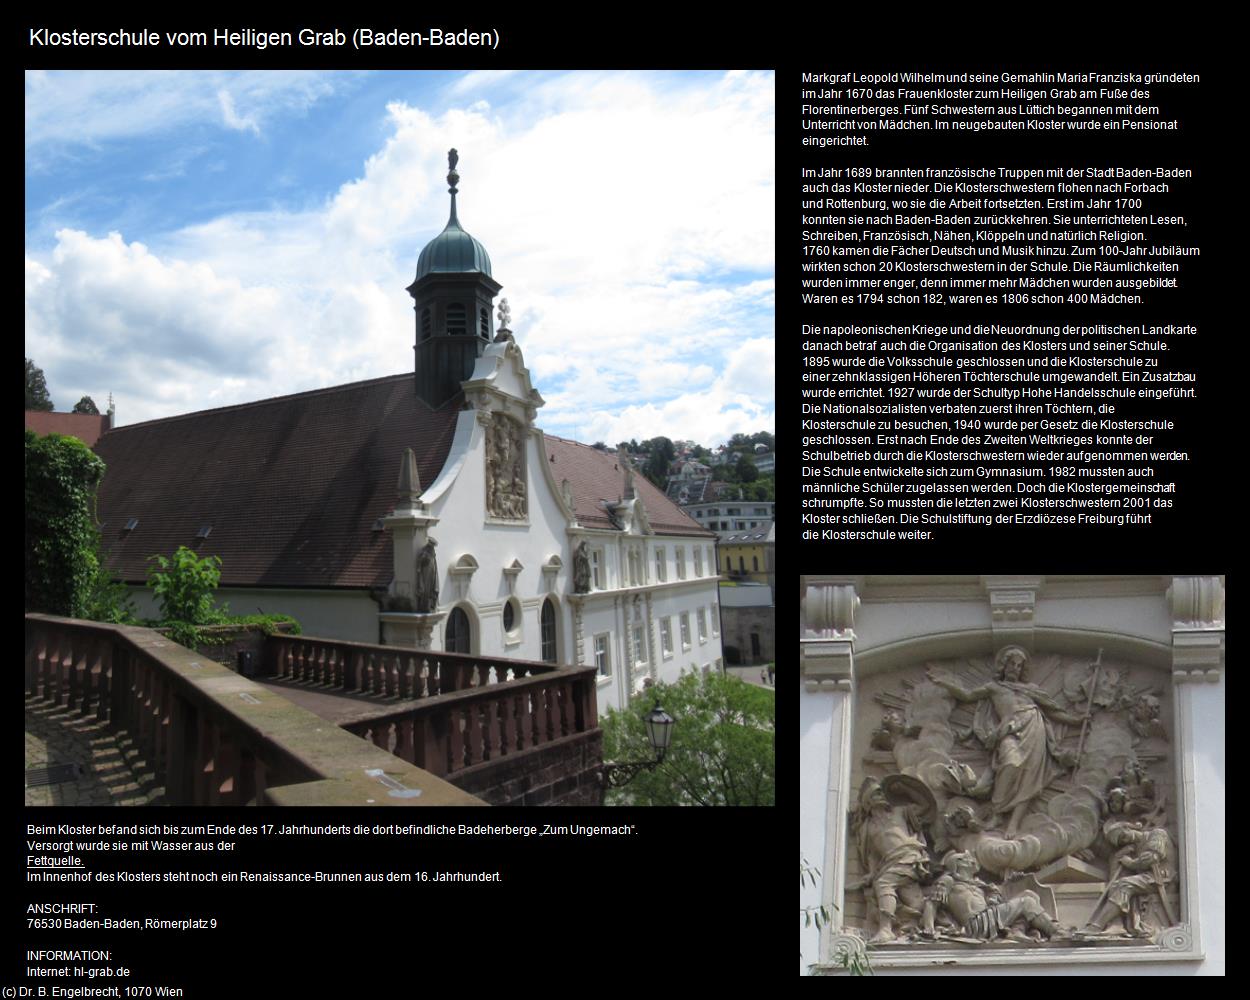 Klosterschule vom Heiligen Grab (Baden-Baden) in Kulturatlas-BADEN-WÜRTTEMBERG(c)B.Engelbrecht